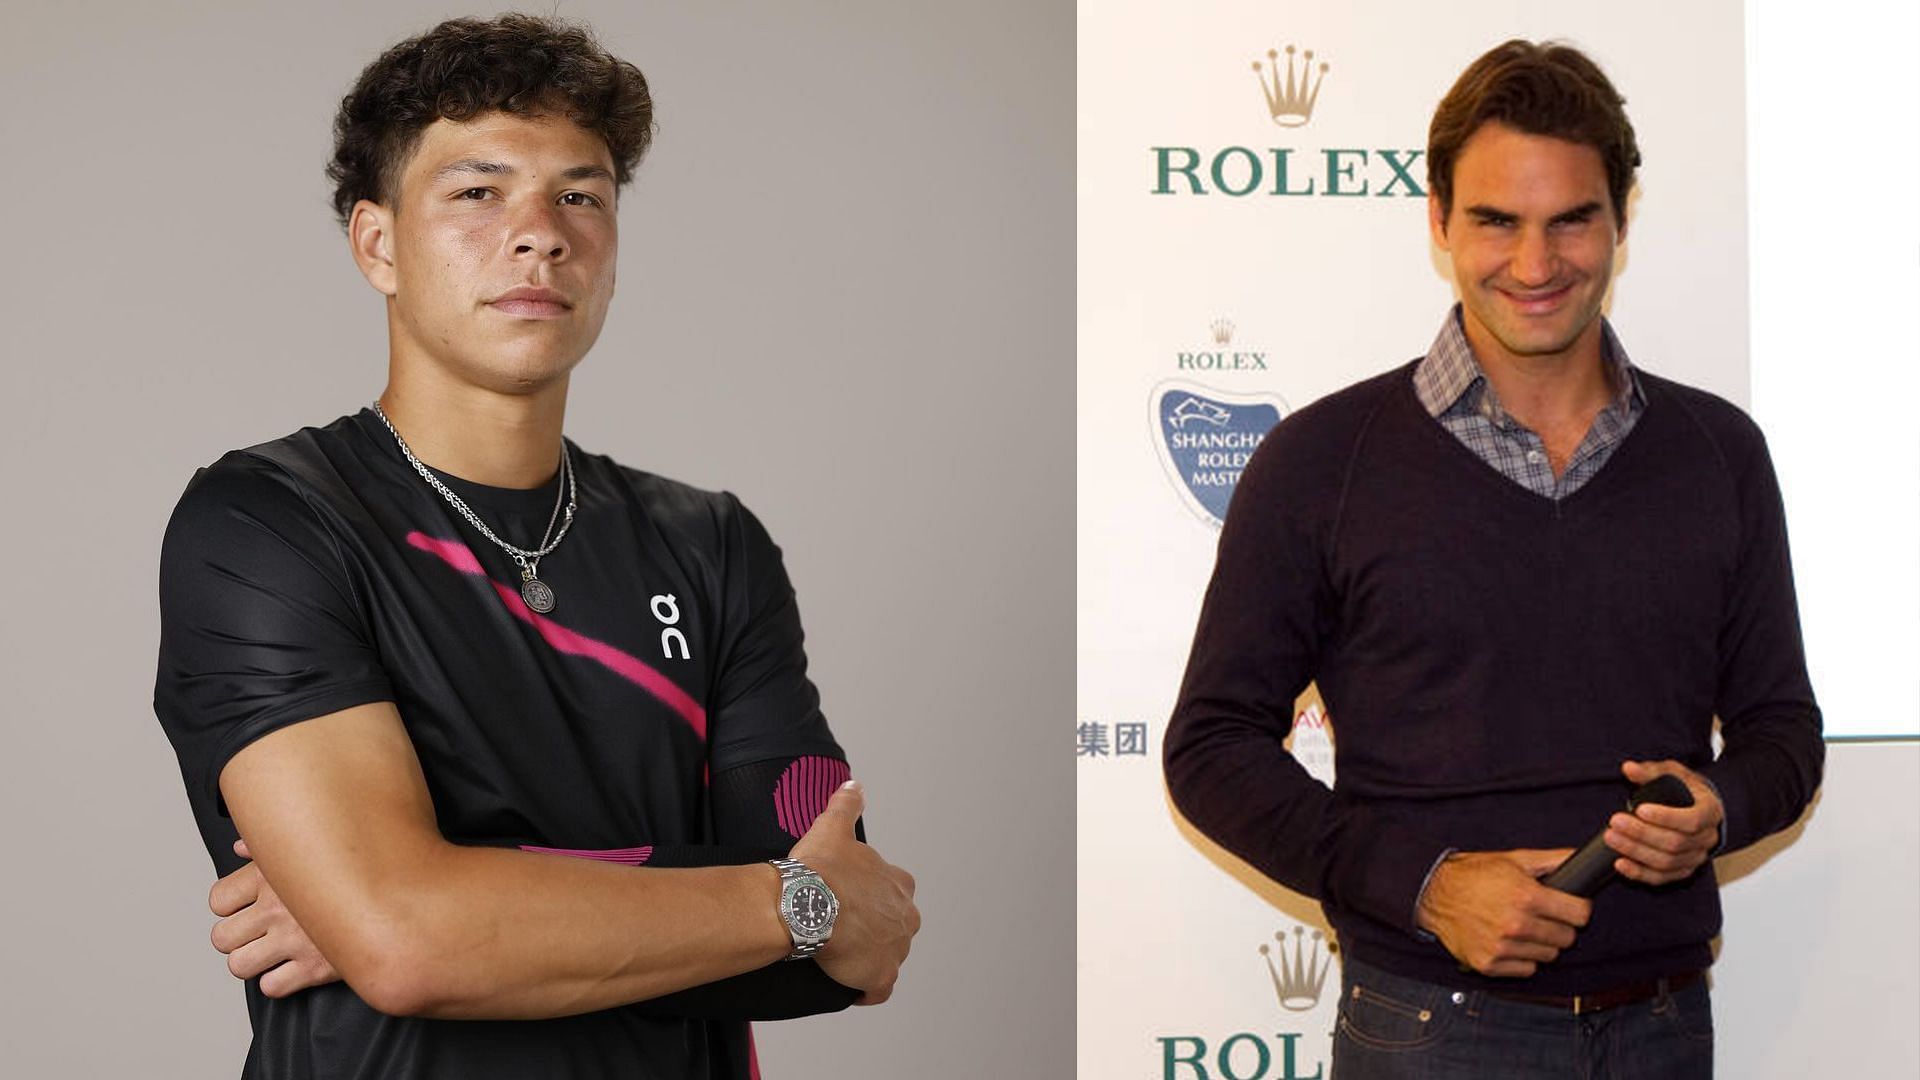 Ben Shelton (L) and Roger Federer (R)